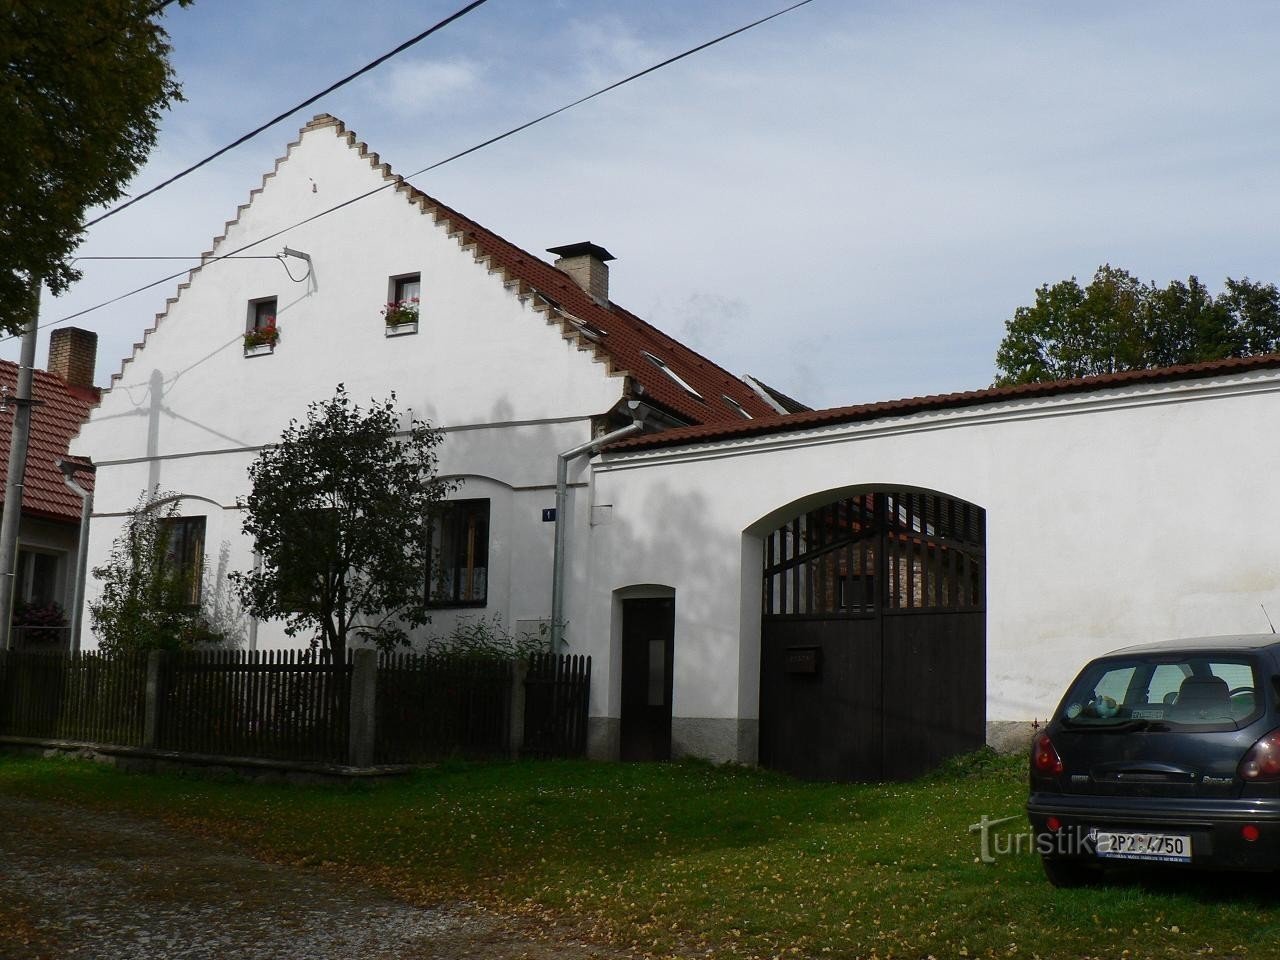 Čermná, one of the estates